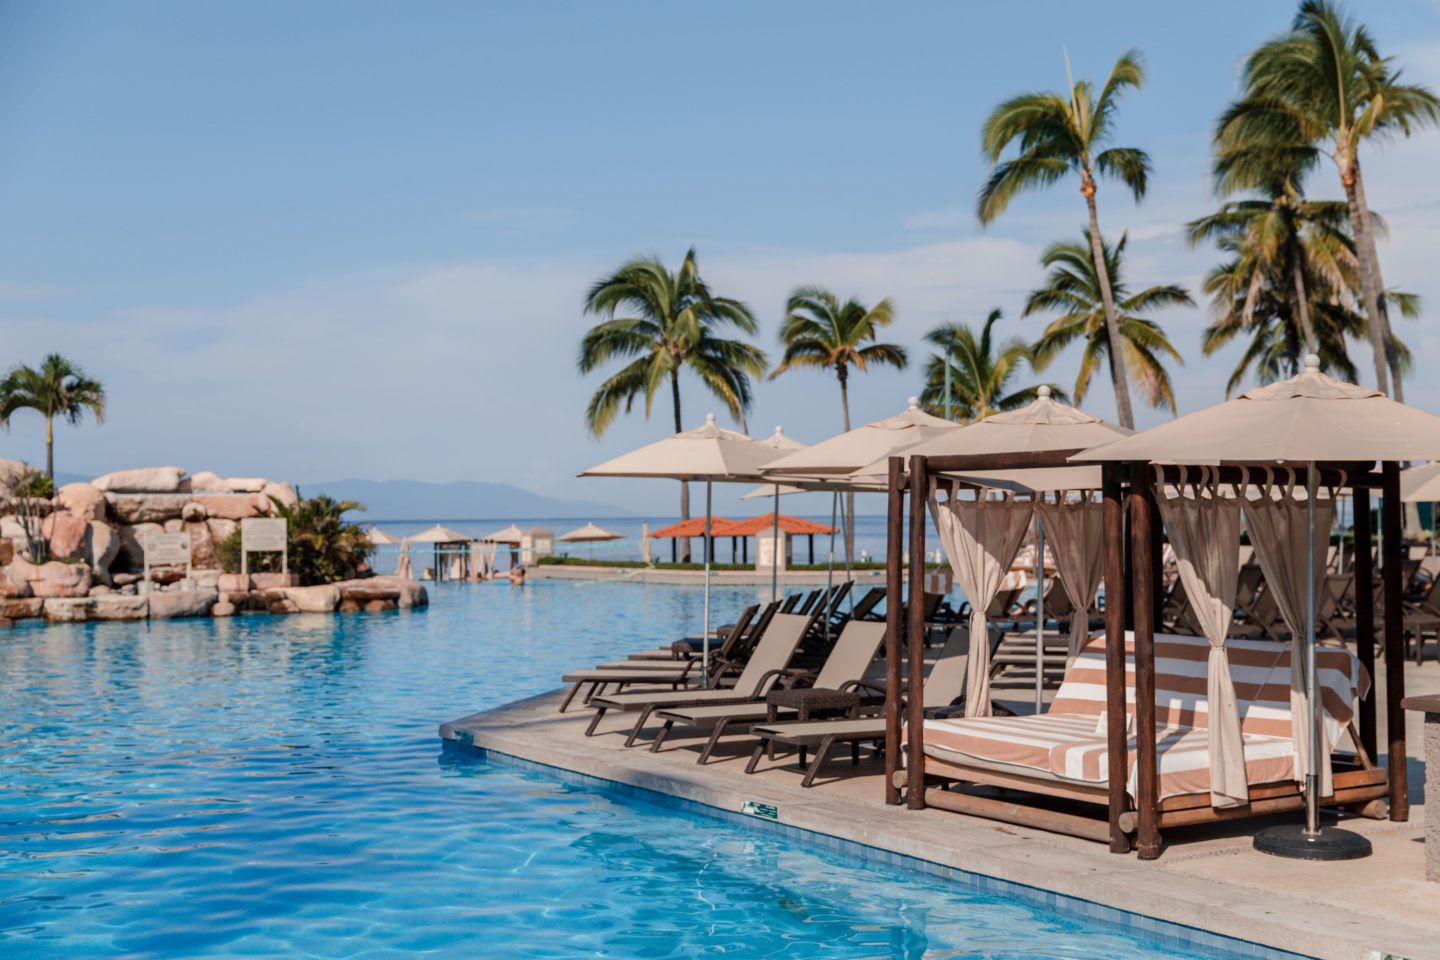 Where to Stay In Puerto Vallarta Mexico | Marriott Puerto Vallarta Hotel review - Dana Berez Travel Guide